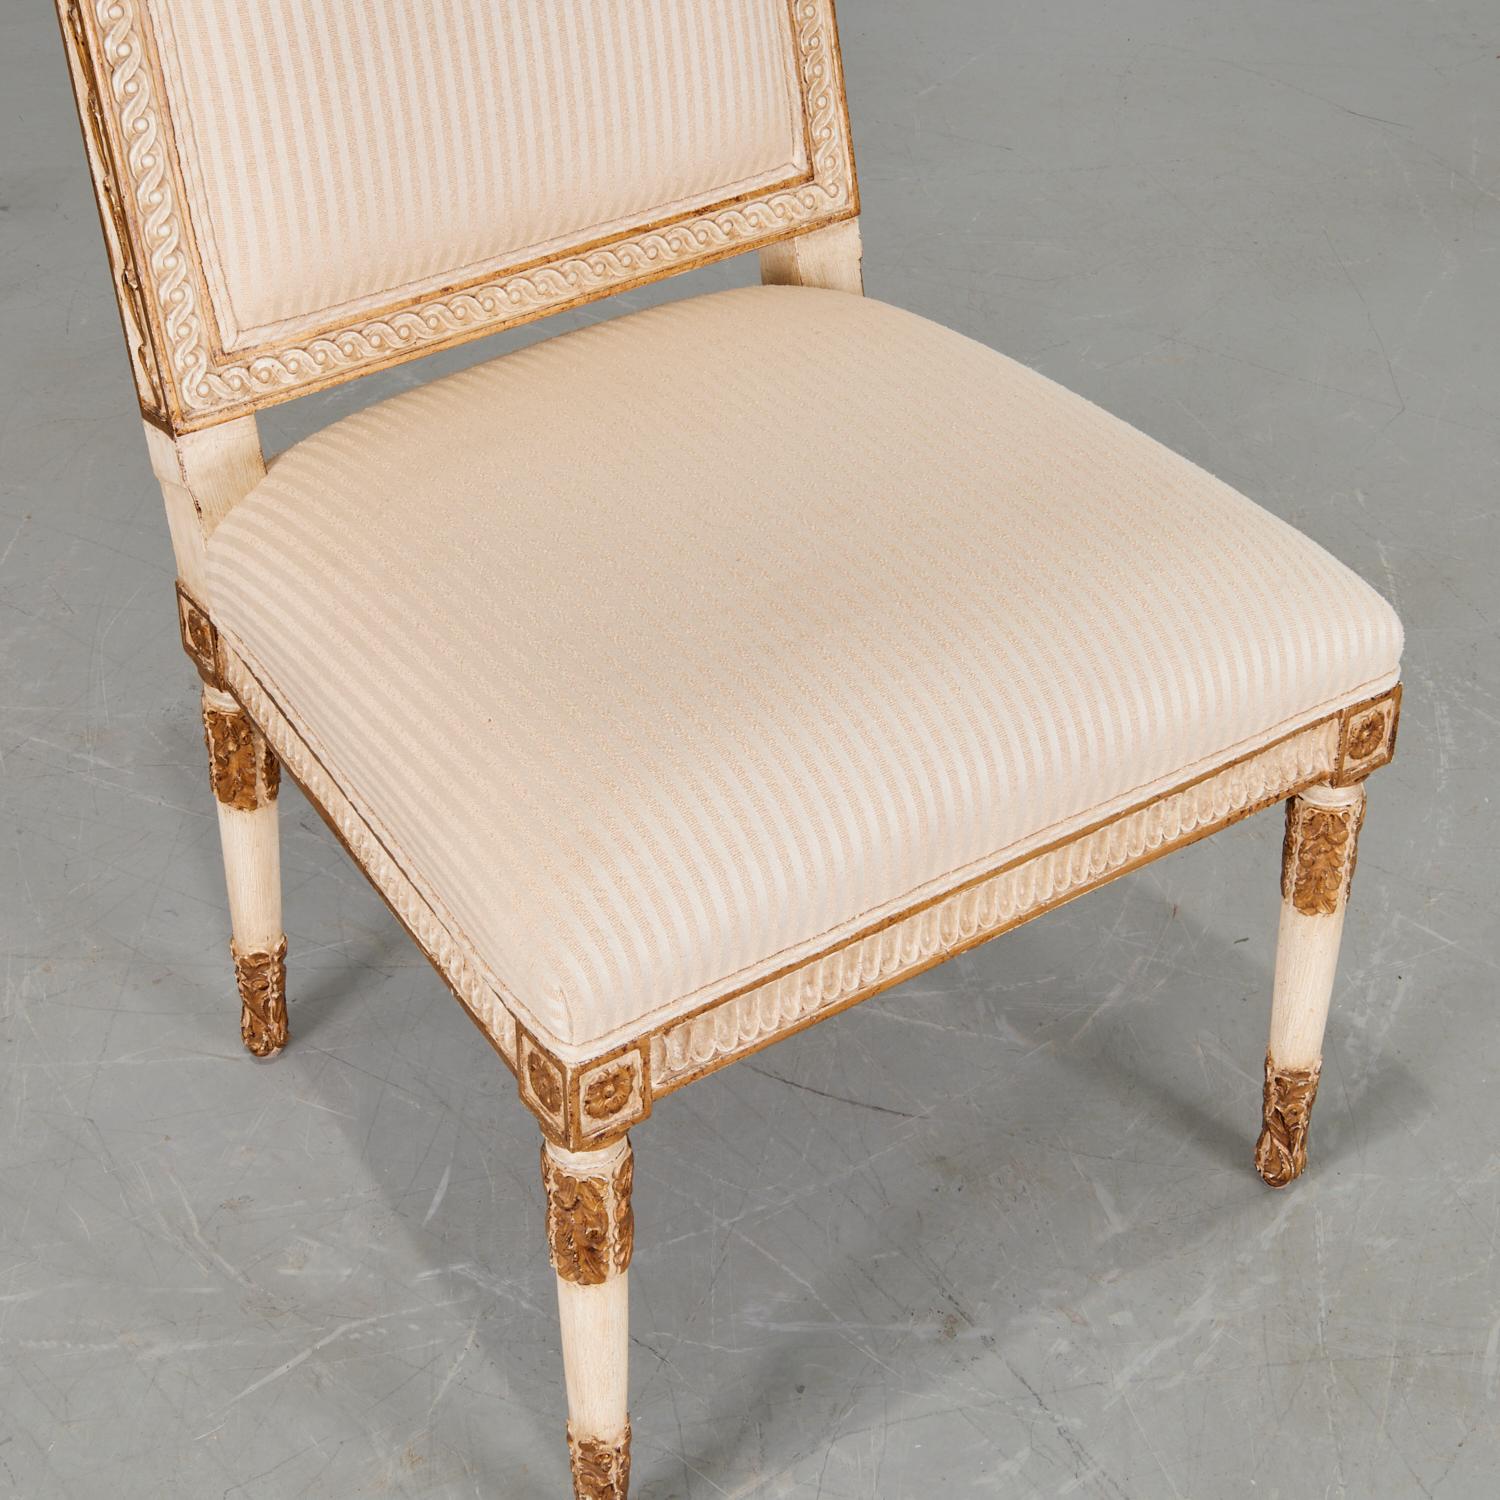 20ème chaise pantoufle italienne de style néoclassique avec un cadre sculpté peint en crème et en or, une assise et un dossier tapissés de rayures crème.  Non marqué.

Dimensions :
37,75 